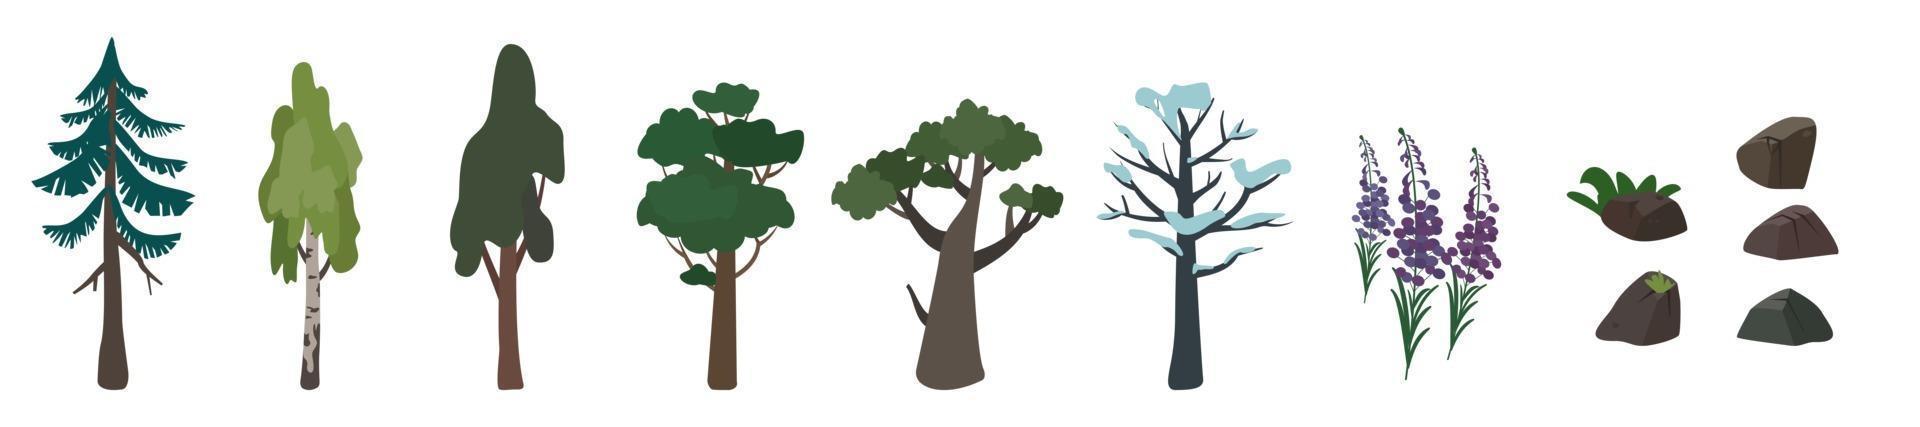 conjunto de ícones de árvores de vidoeiro, carvalho, abeto e sua silhueta. símbolo verde e marrom da natureza vetor